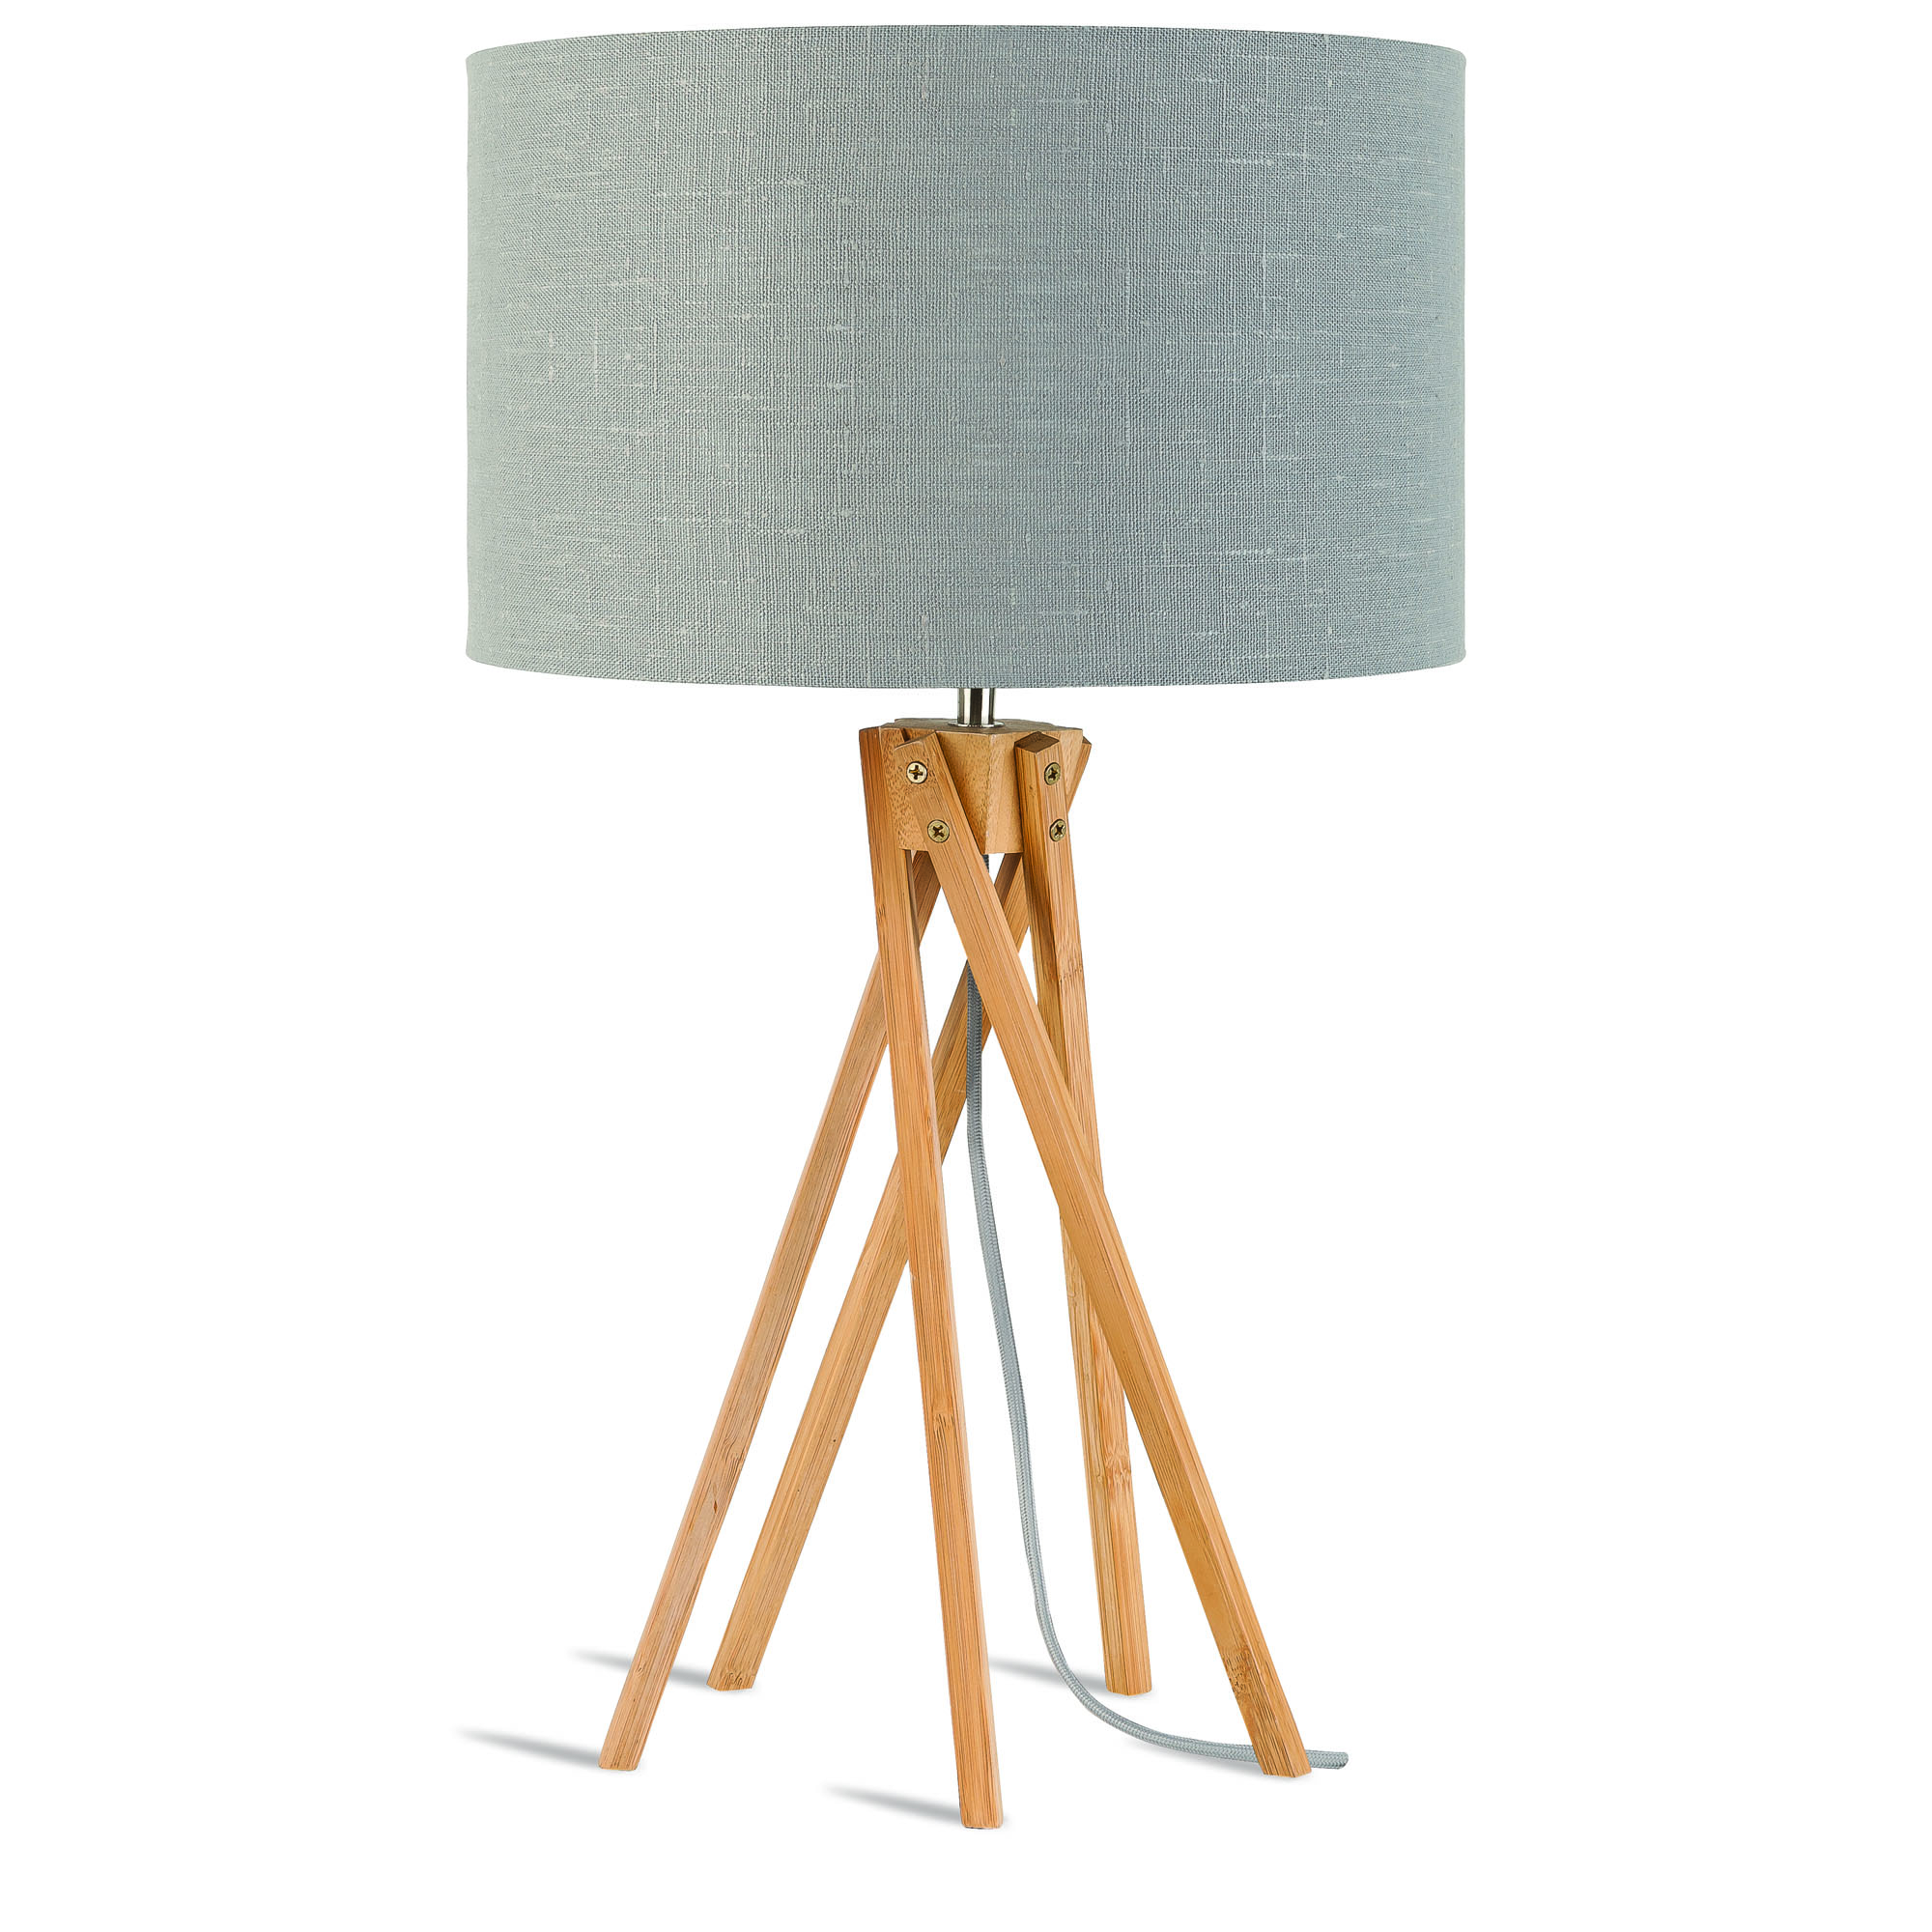 Lampe de table en bambou abat-jour en lin gris clair, h. 59cm